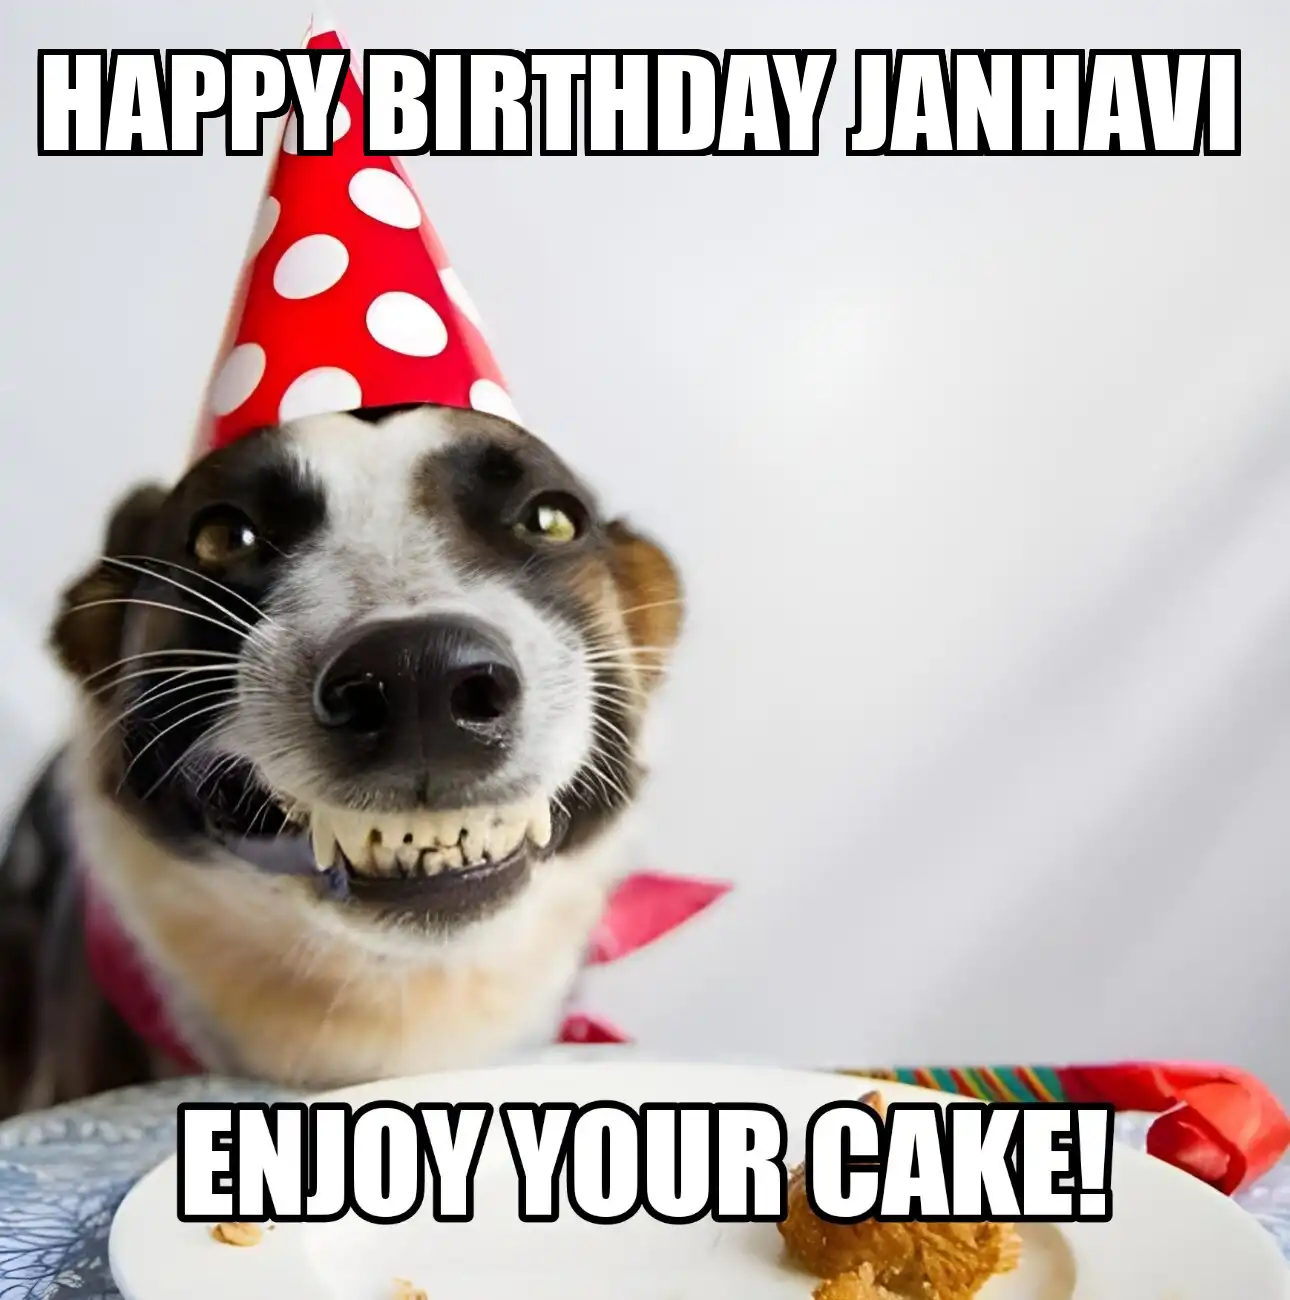 Happy Birthday Janhavi Enjoy Your Cake Dog Meme